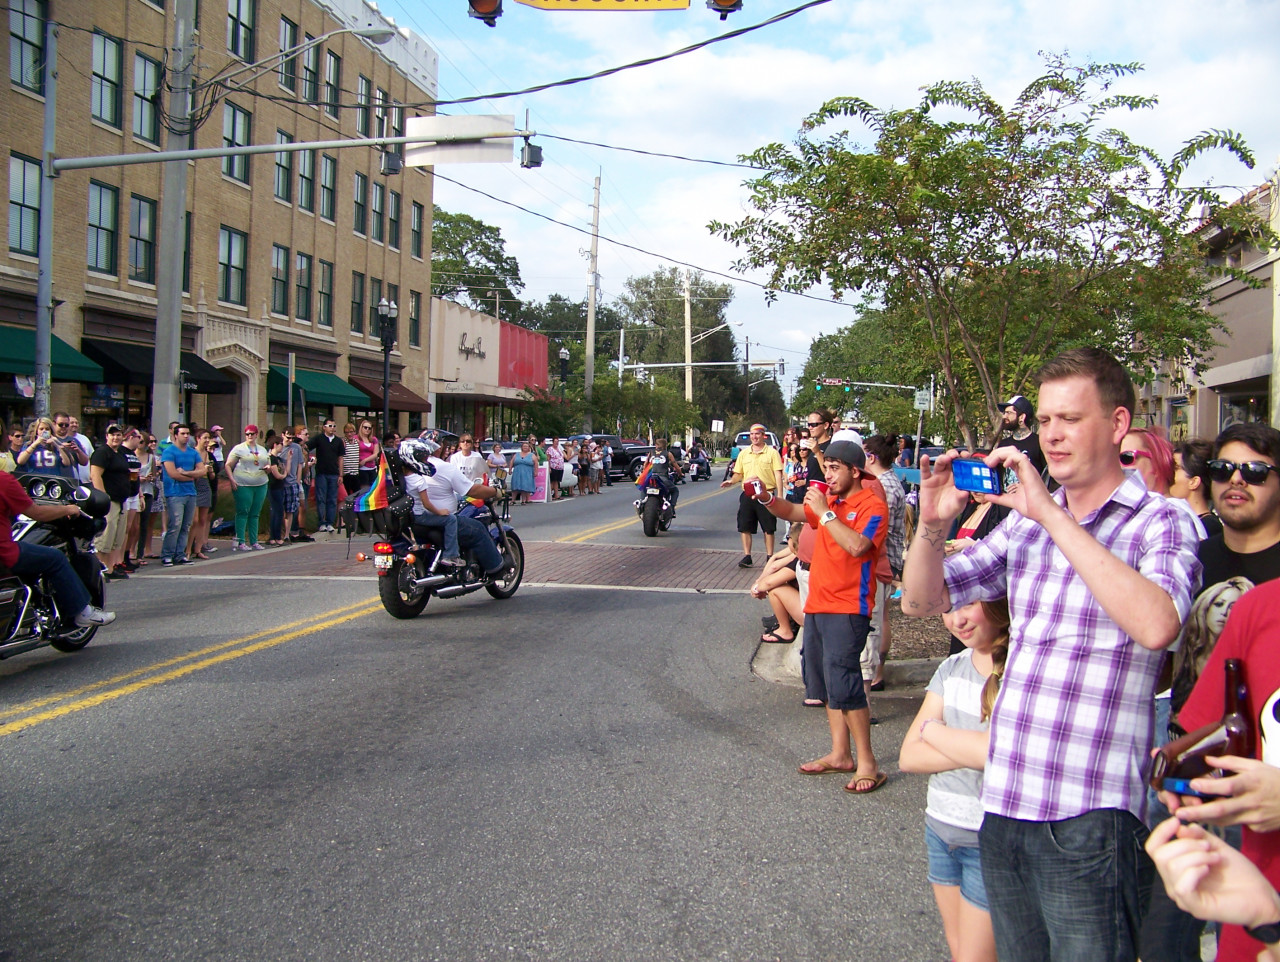 Jacksonville Pride parade 2012